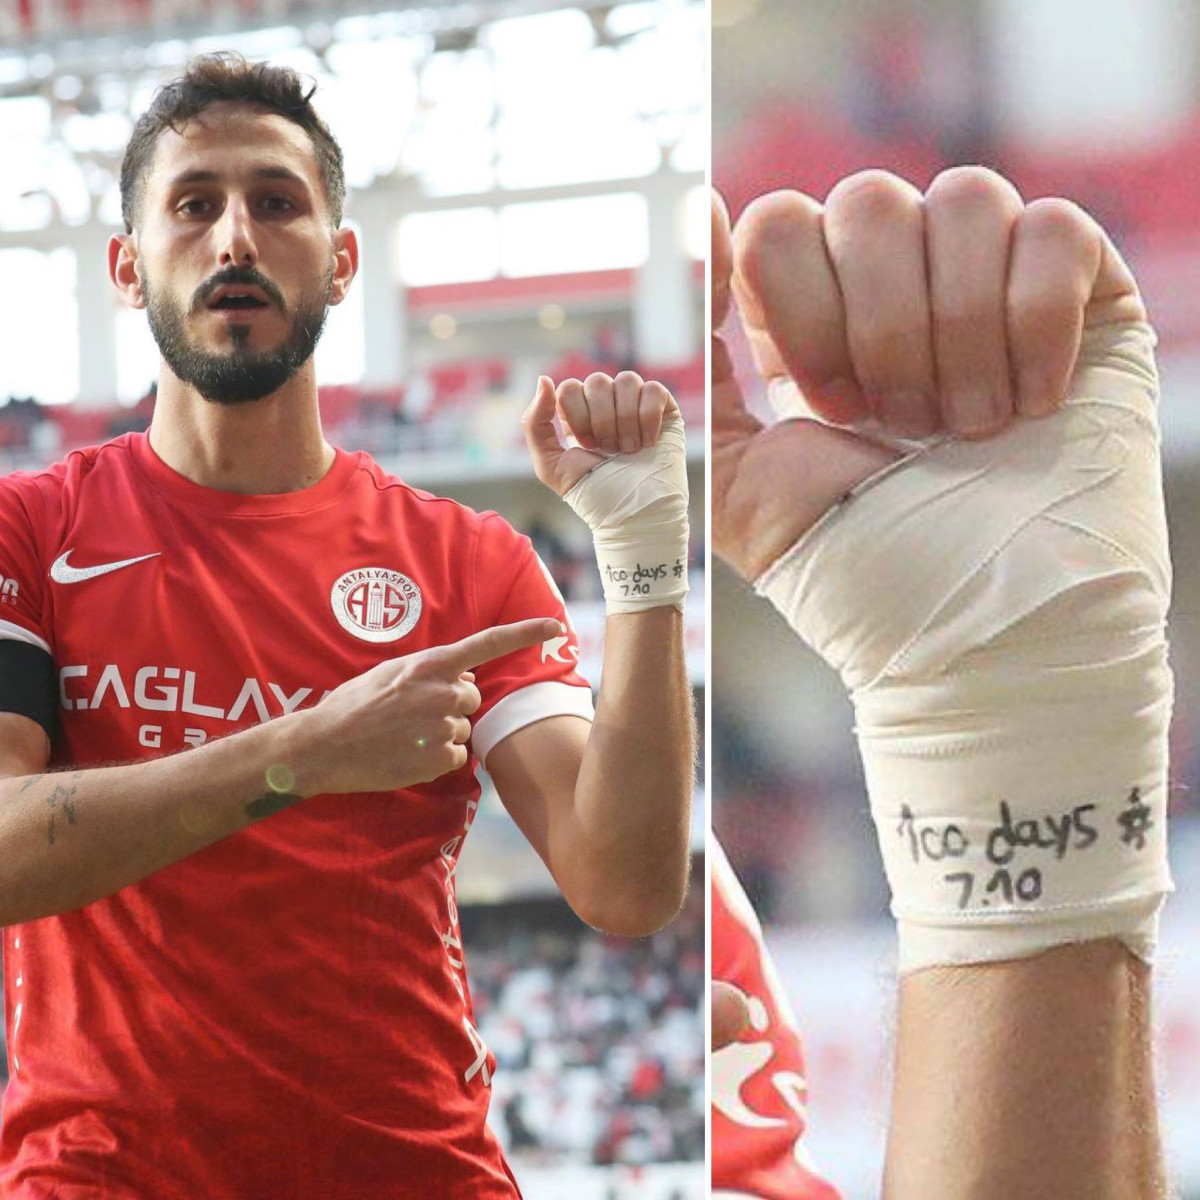 Τουρκία / Σύλληψη Ισραηλινού ποδοσφαιριστή για «υποκίνηση μίσους» – Πανηγύρισε γκολ με μήνυμα υπέρ του Ισραήλ